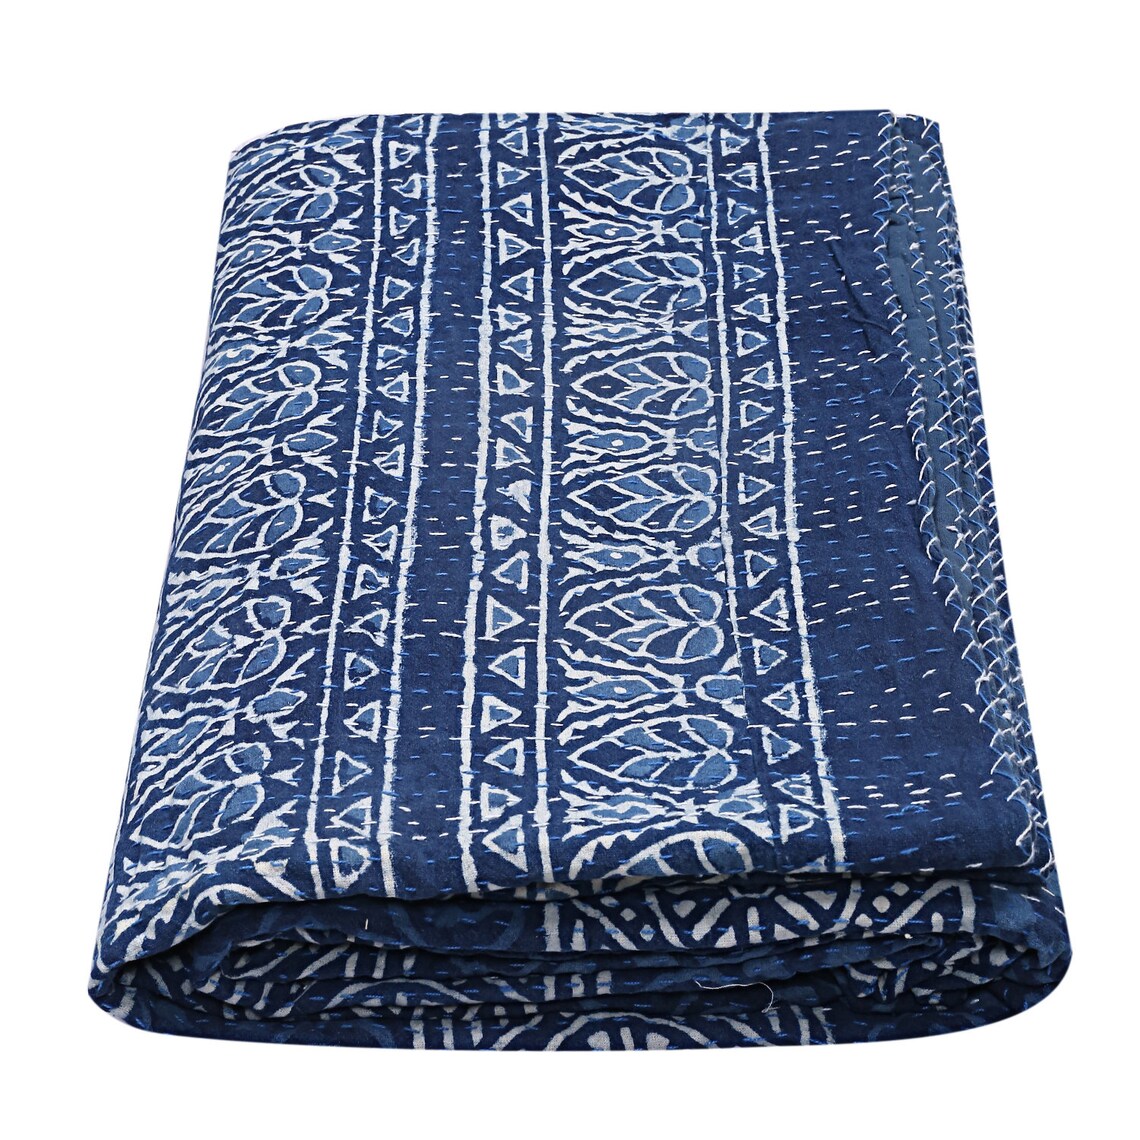 Reversible Indigo Blue Printed Floral Kantha Bedcover Blanket | Etsy